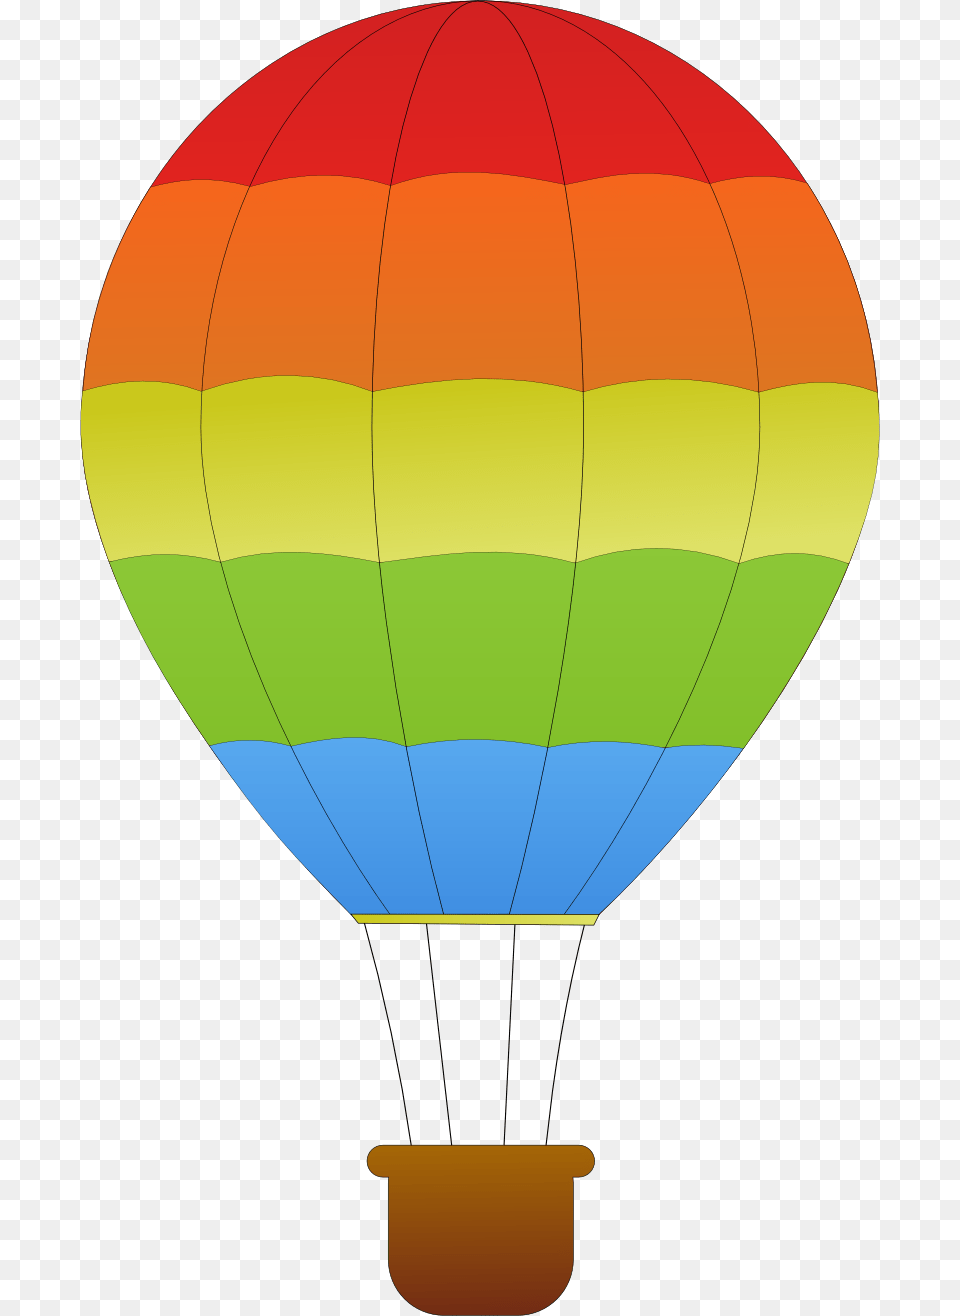 Air Balloon, Aircraft, Hot Air Balloon, Transportation, Vehicle Free Png Download